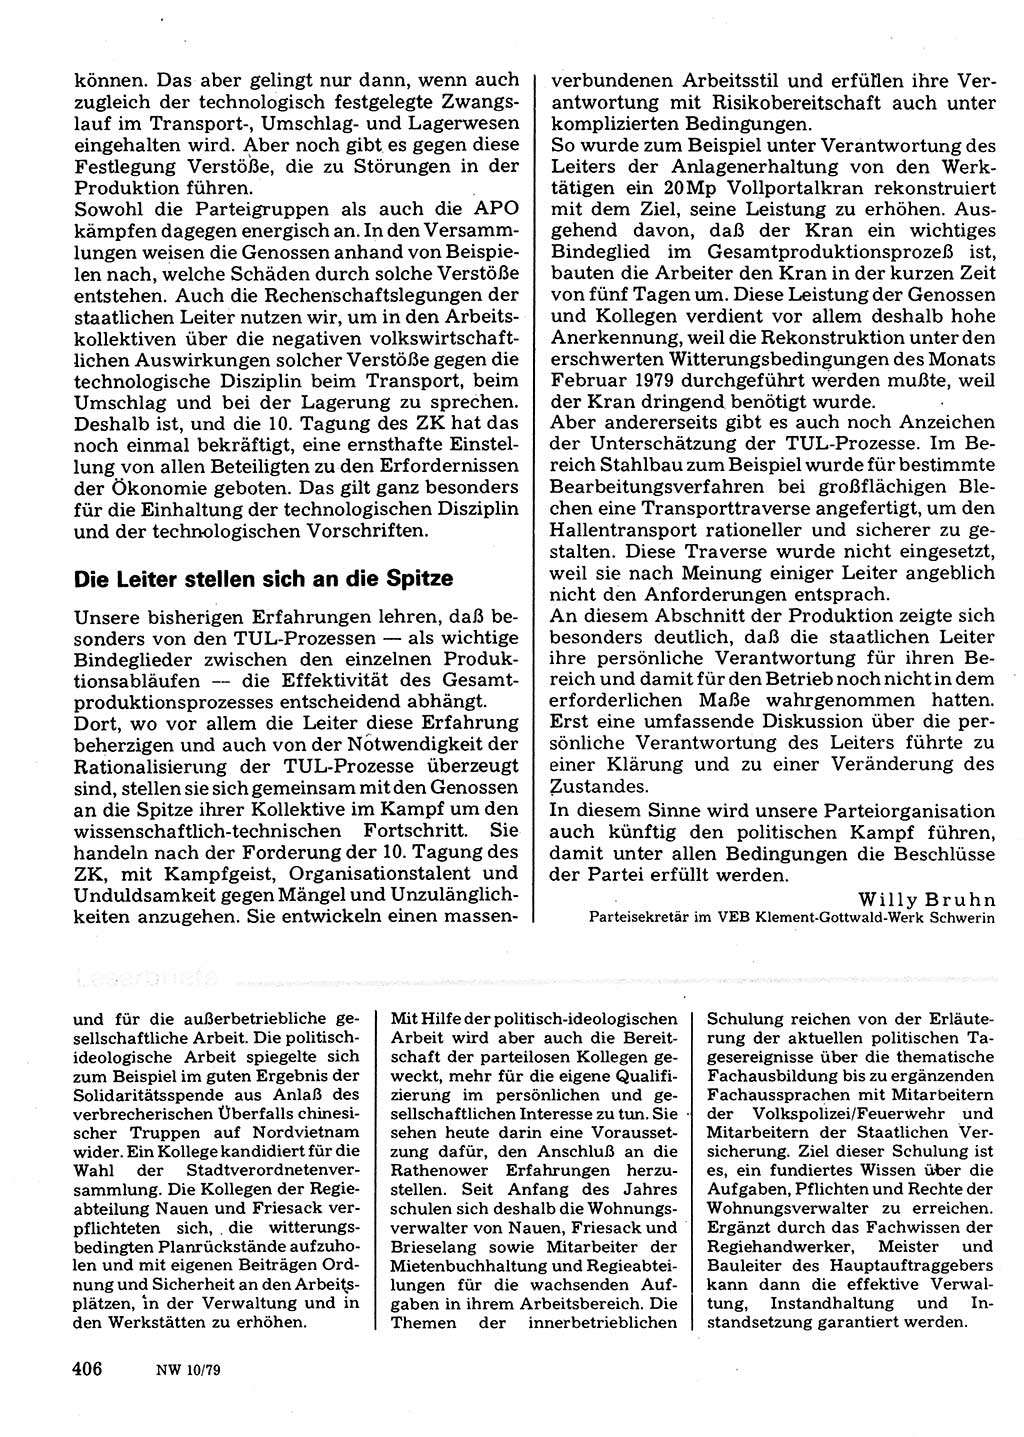 Neuer Weg (NW), Organ des Zentralkomitees (ZK) der SED (Sozialistische Einheitspartei Deutschlands) für Fragen des Parteilebens, 34. Jahrgang [Deutsche Demokratische Republik (DDR)] 1979, Seite 406 (NW ZK SED DDR 1979, S. 406)